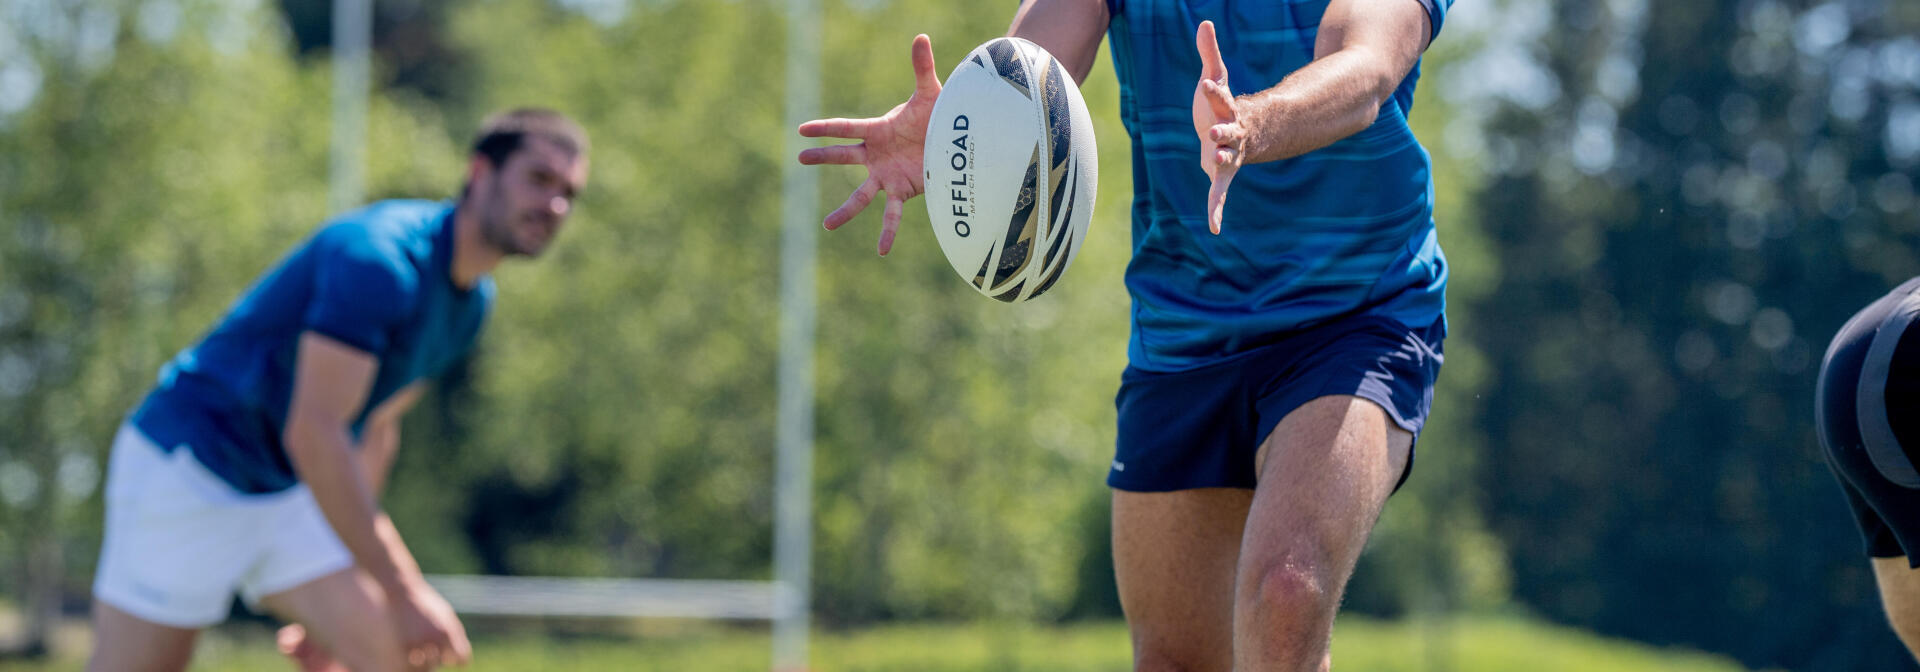 conseils-skills-rugby-les-coups-de-pied-en-jeu-courant